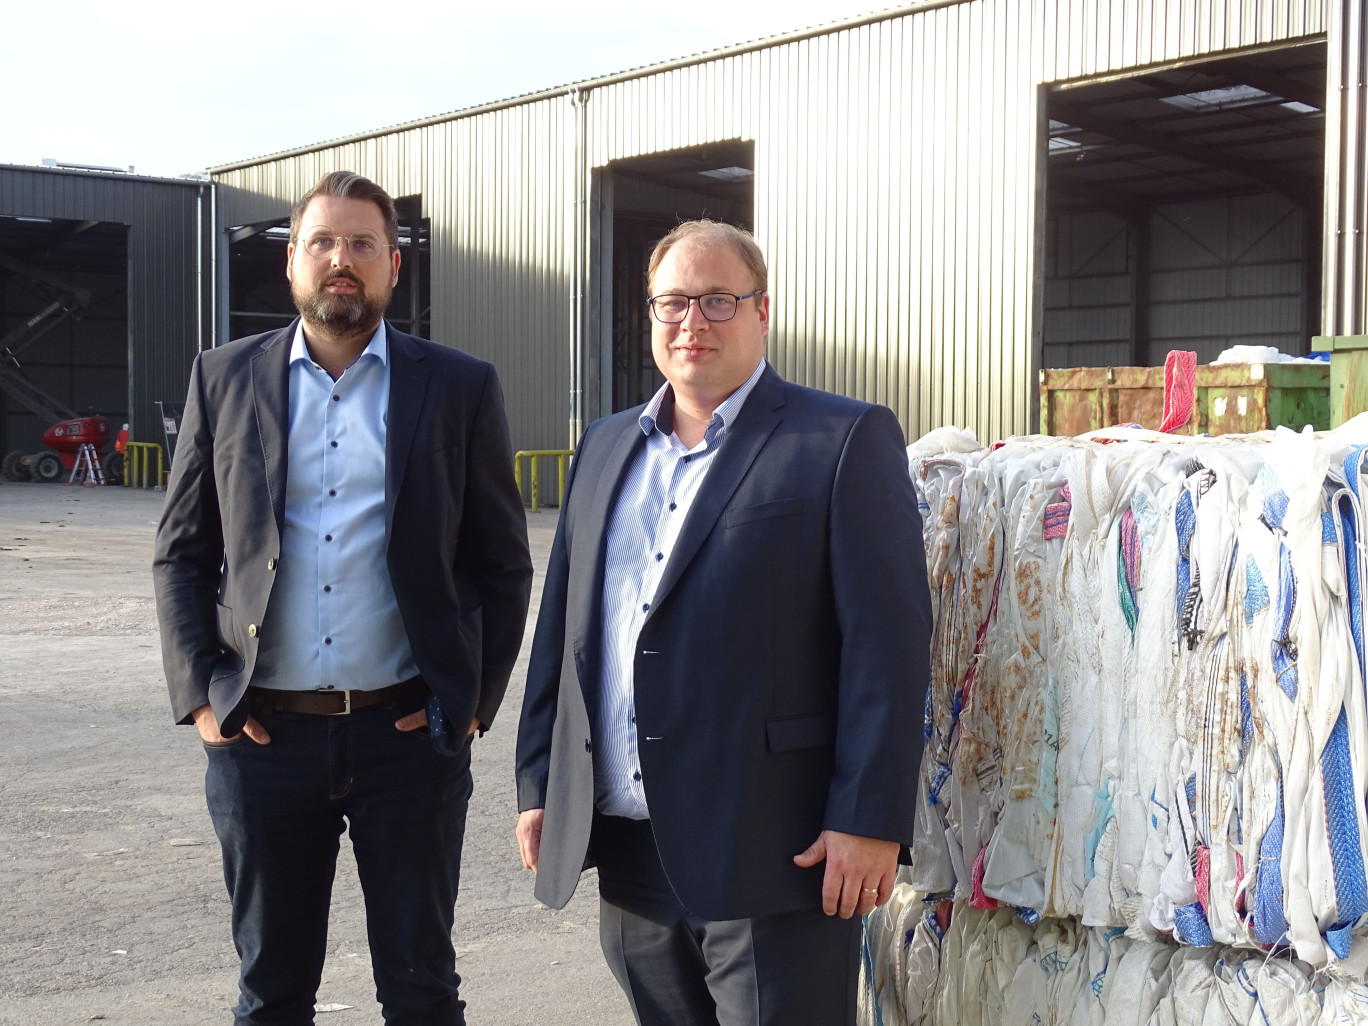 Guillaume et Geoffroy Sécula, dirigeants de Bourgogne Recyclage, vont accueillir le premier centre de sur-tri des emballages plastiques de France. (© Aletheia Press / N. Hubert)